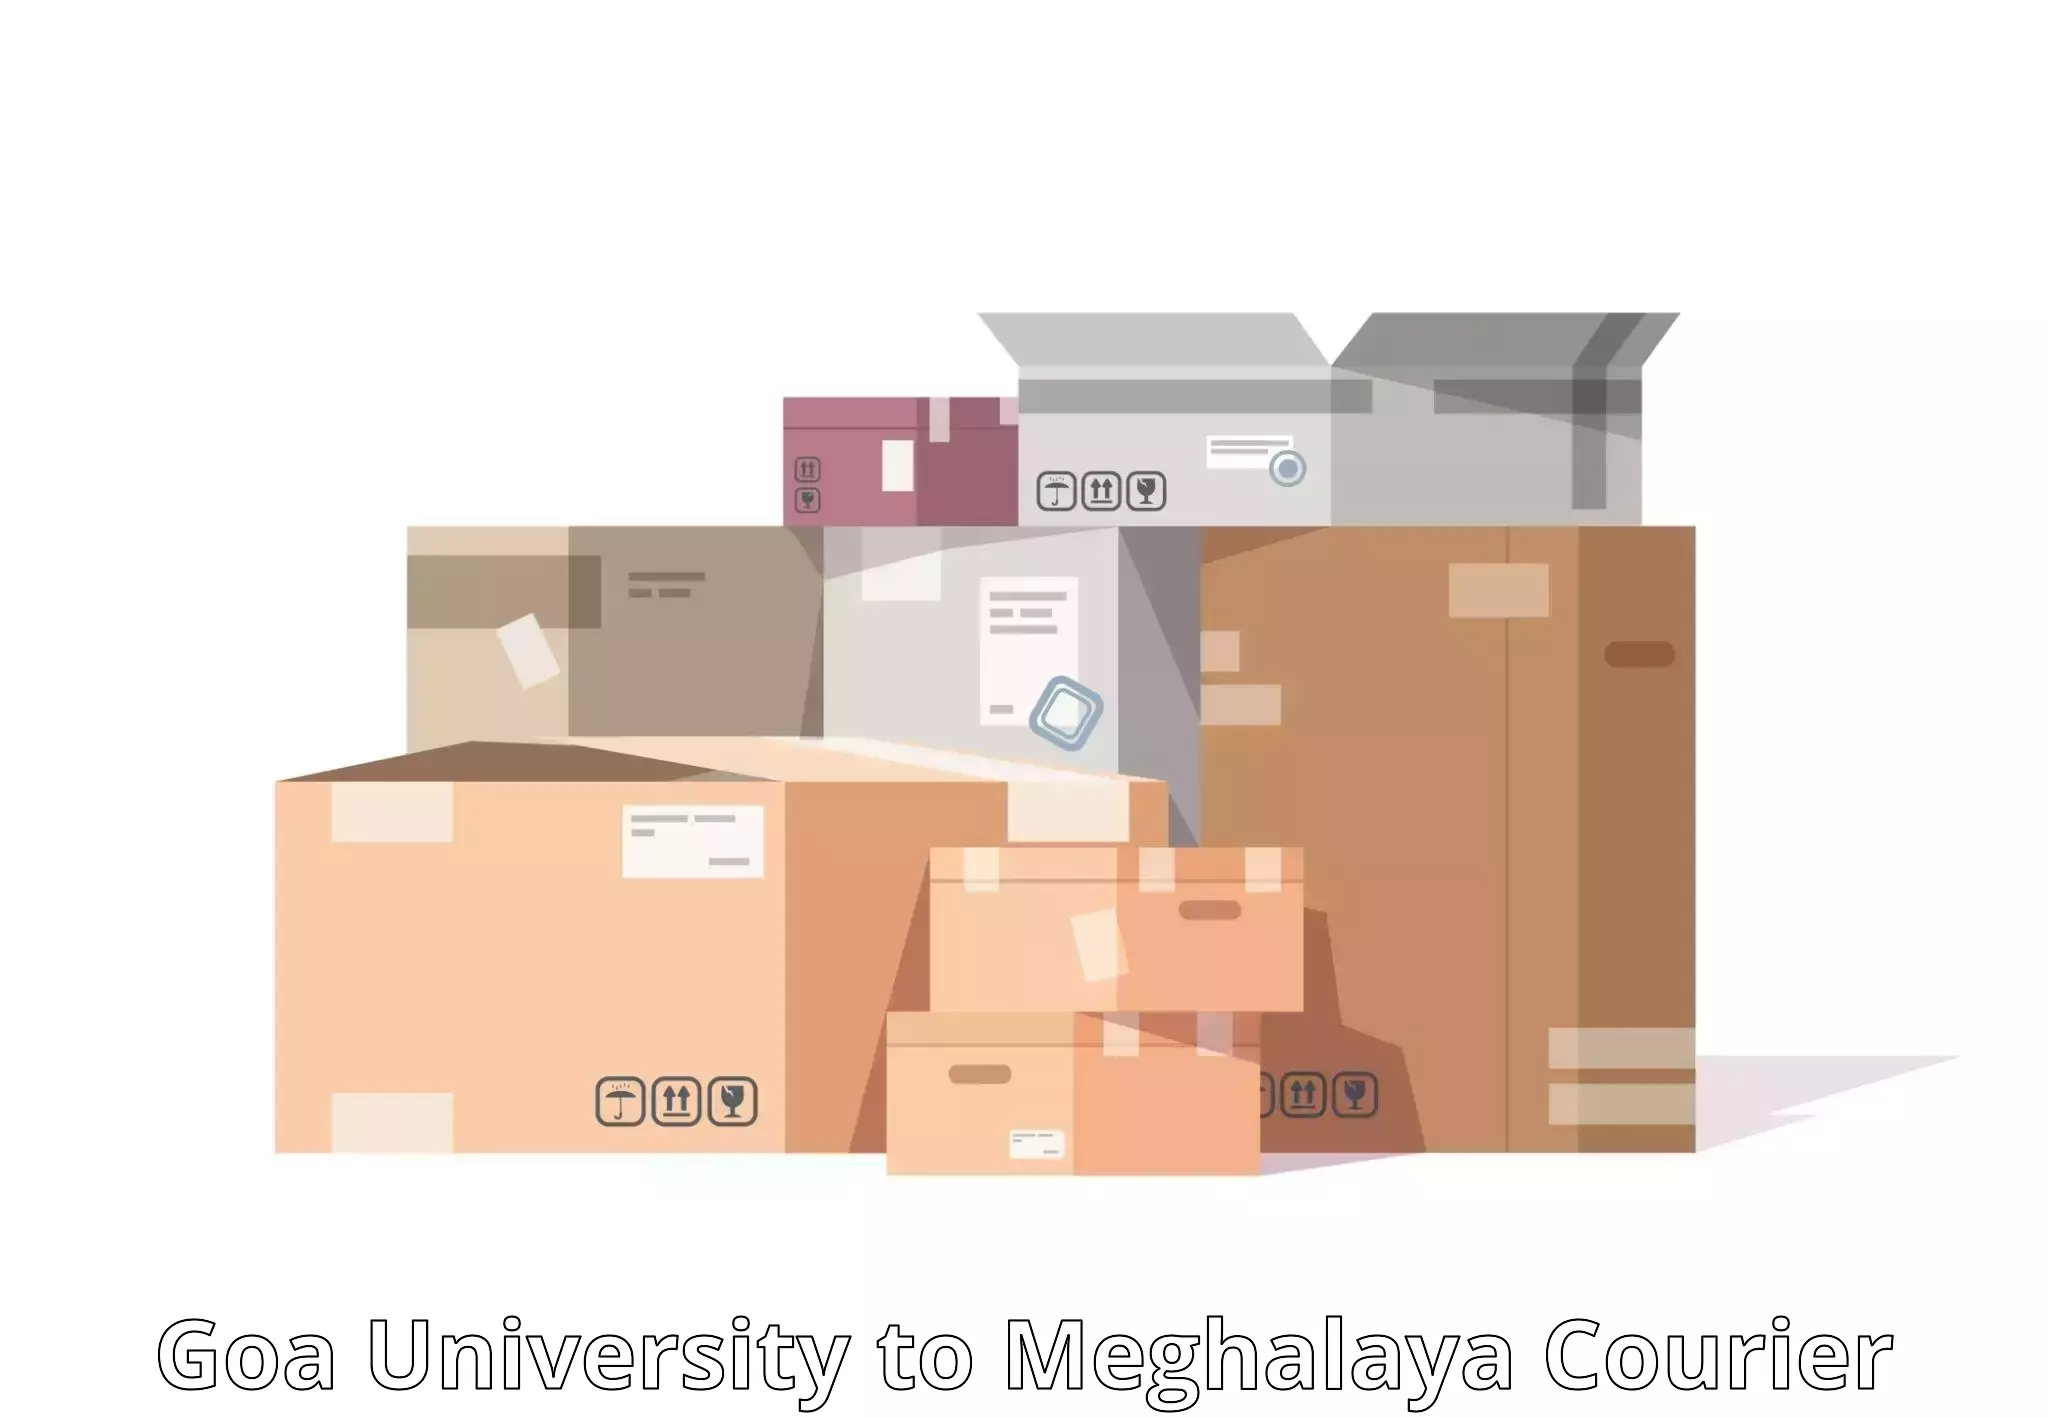 Reliable courier service Goa University to Dkhiah West